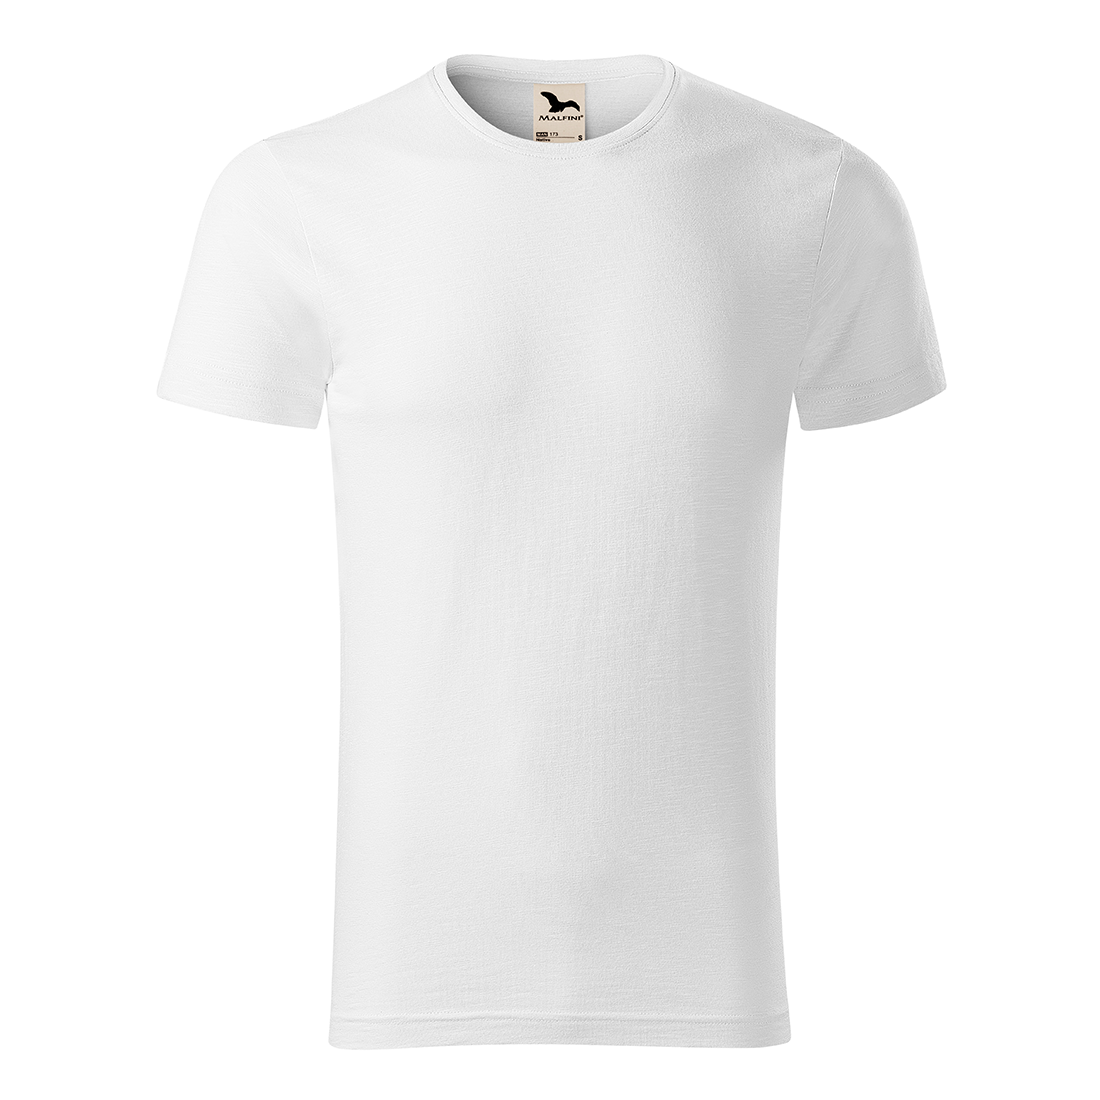 T-shirt homme coton bio NATIVE - Les vêtements de protection